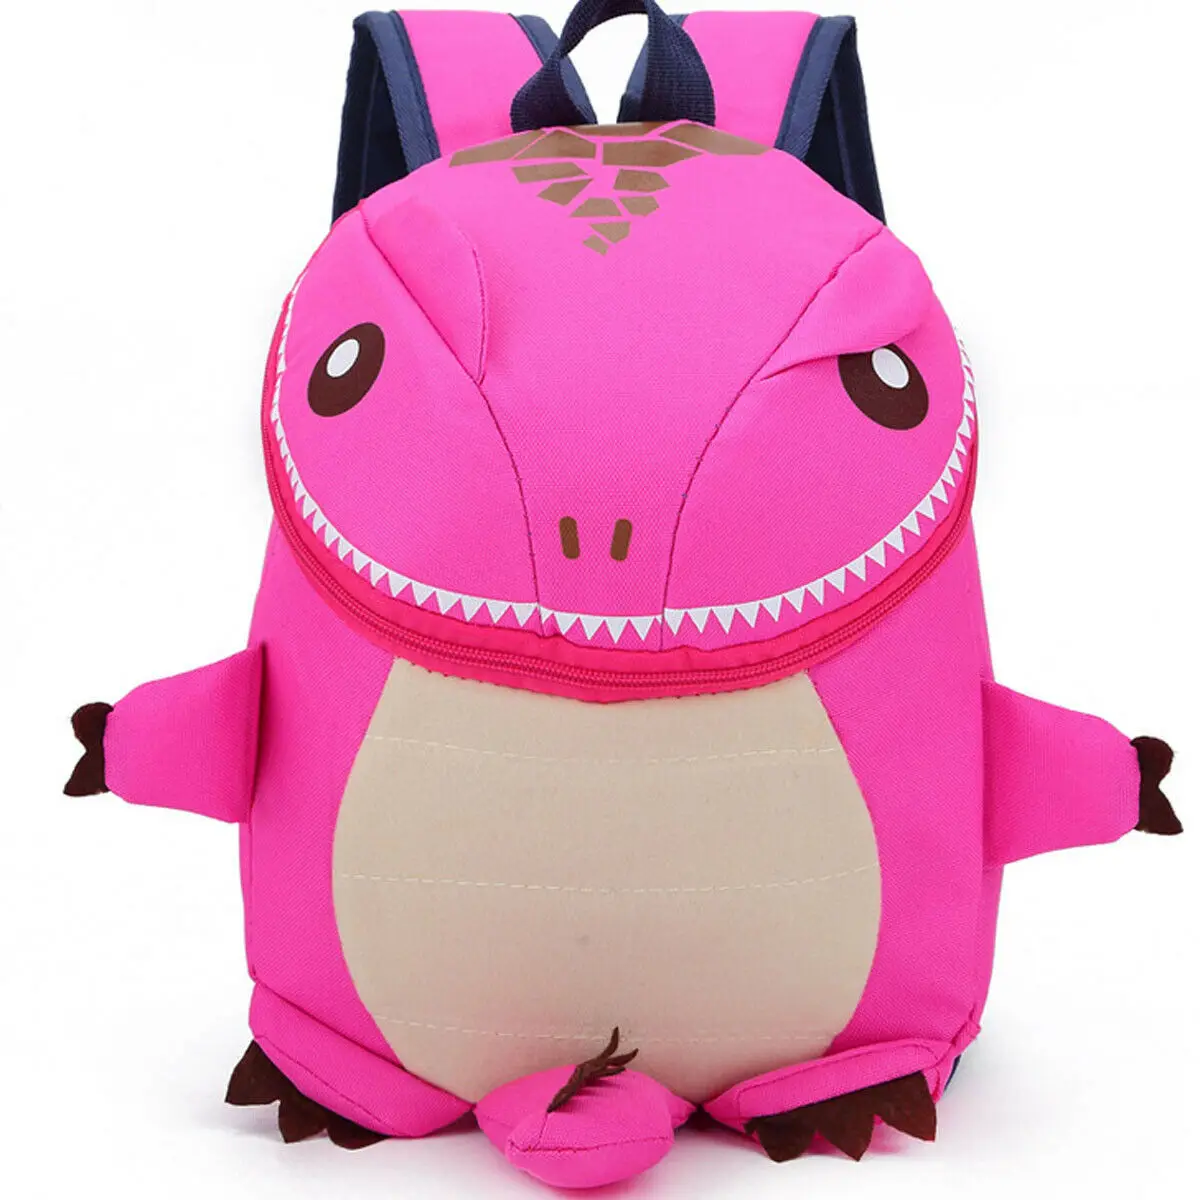 Местный склад 3D Динозавр Детская сумка для мальчиков девочек Водонепроницаемые Детские рюкзаки детская сумка животные принты дорожные сумки игрушки подарки - Цвет: Ярко-розовый